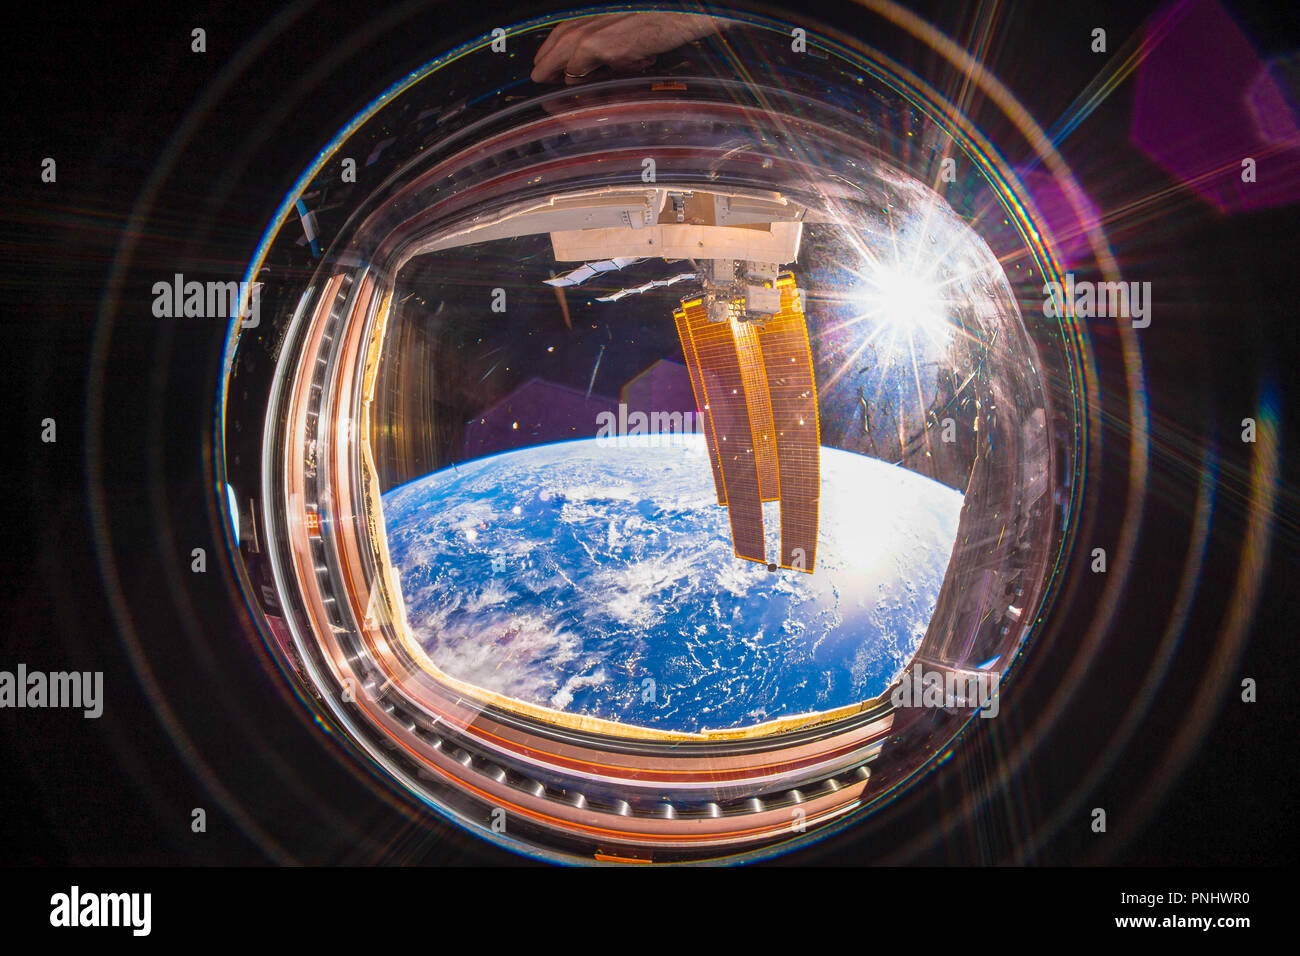 Belle planète Terre vue de l'intérieur de la Station spatiale internationale (ISS). Vue grand angle avec le soleil à l'image. Cette image est un document de la NASA Banque D'Images